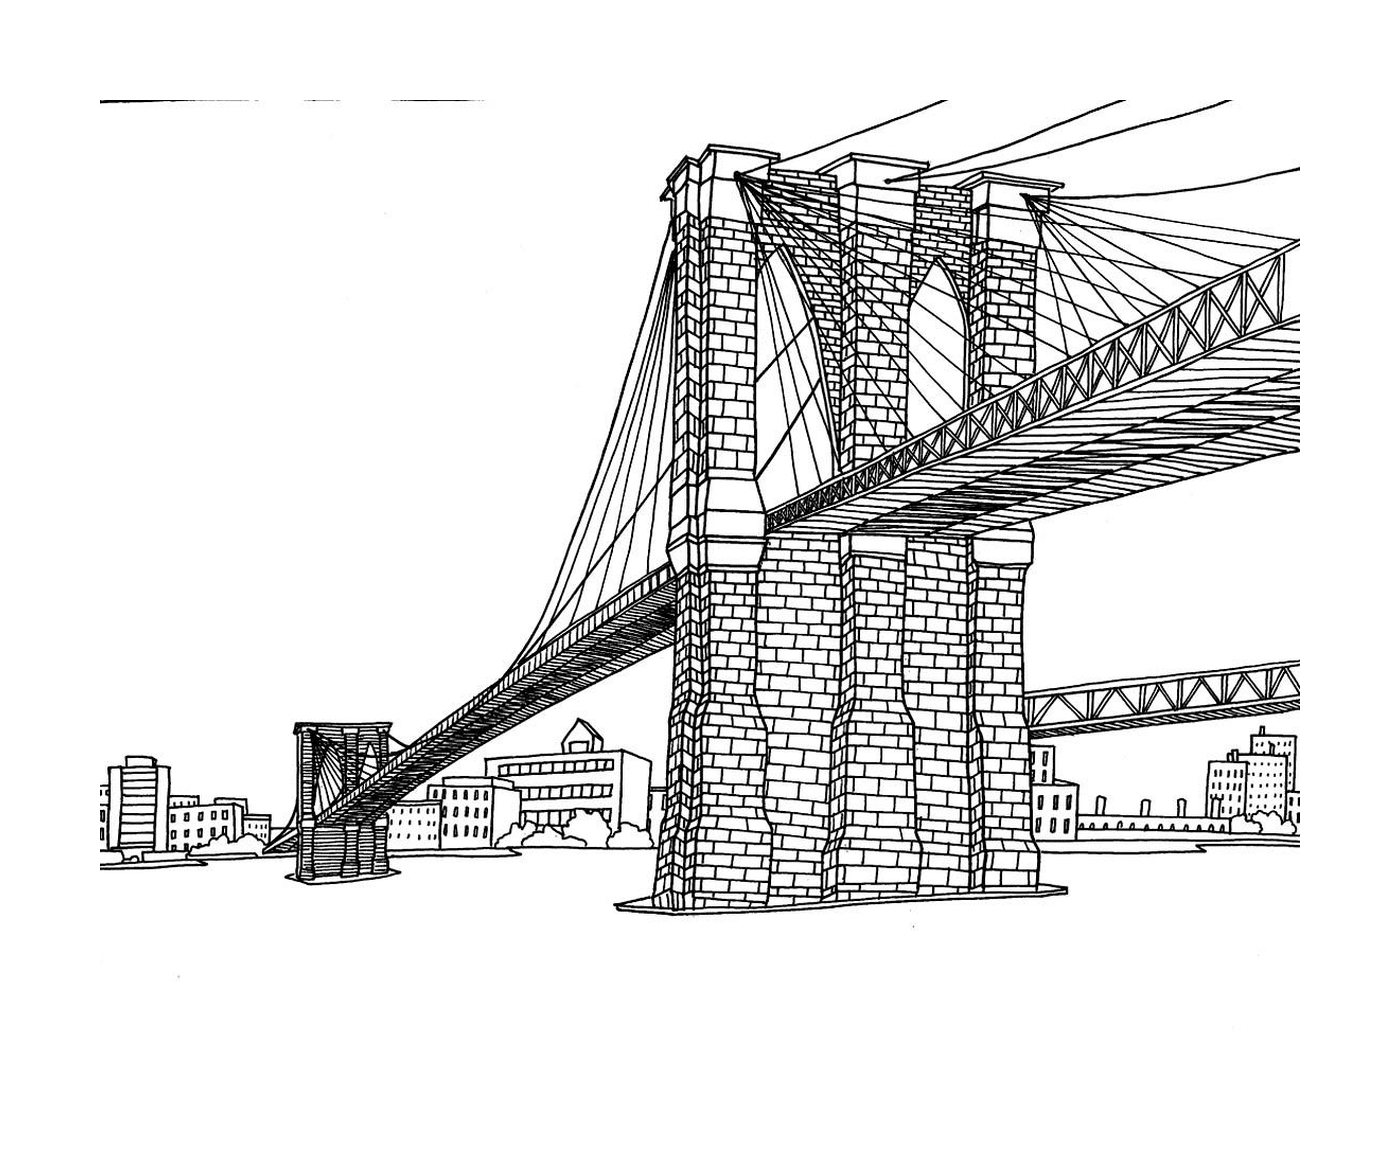  ब्रुकलिन ब्रिज न्यू यॉर्क 